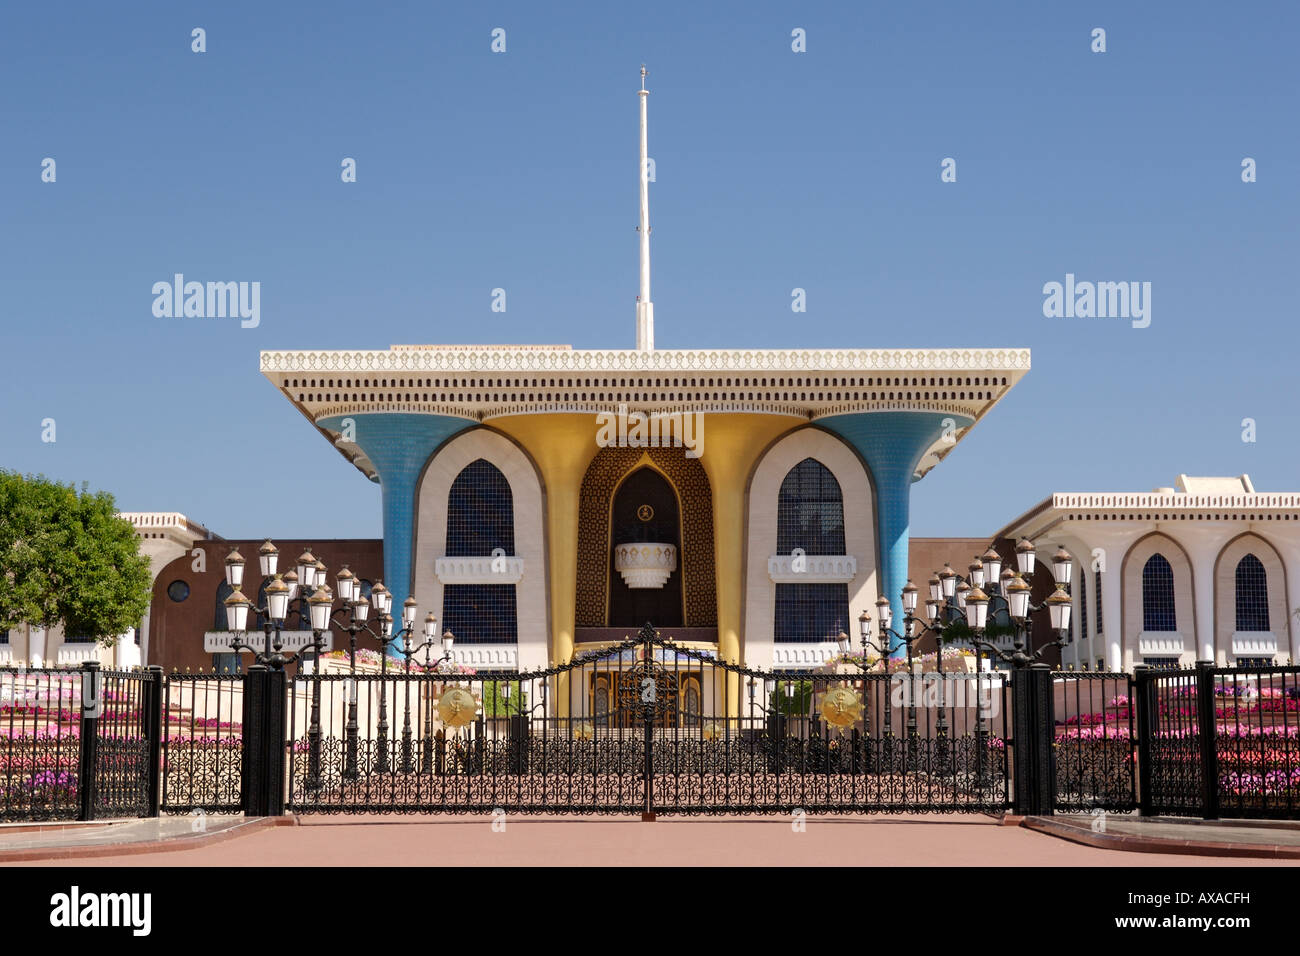 Al Alam palace dans la vieille ville de Mascate. C'est l'une des résidences royales de Qabous, la tête du Sultanat d'Oman. Banque D'Images